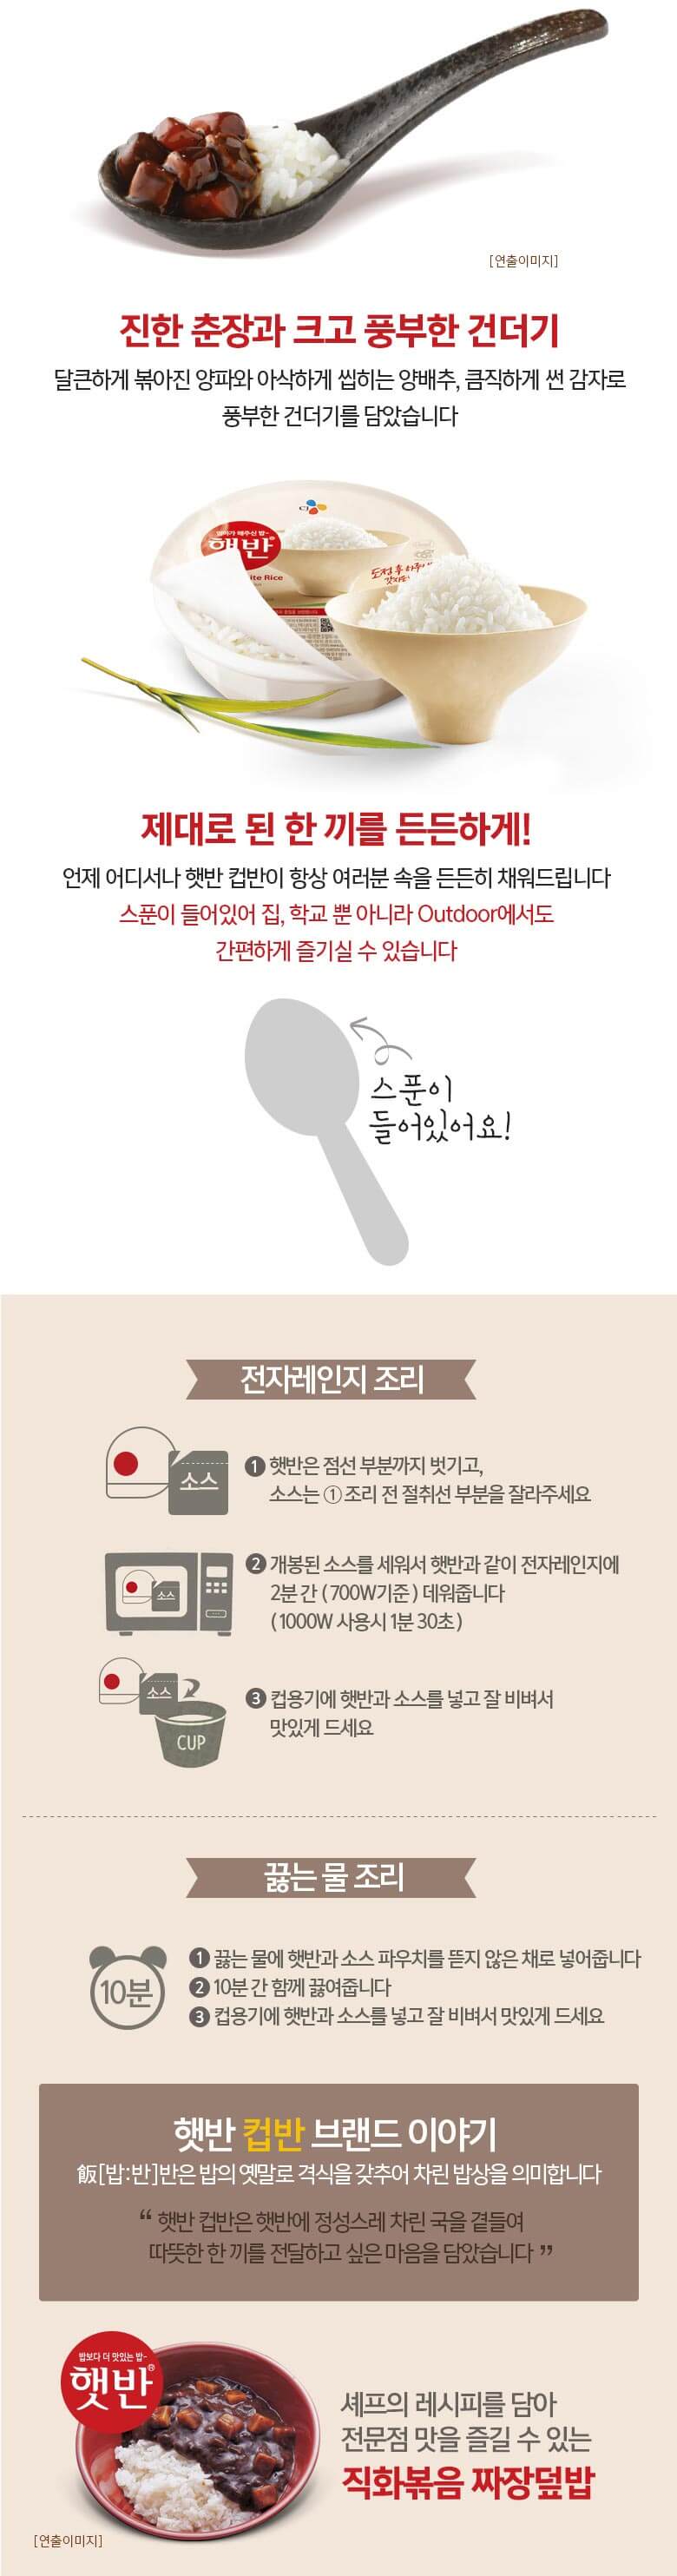 韓國食品-[CJ] 컵반[직화볶음짜장] 280g